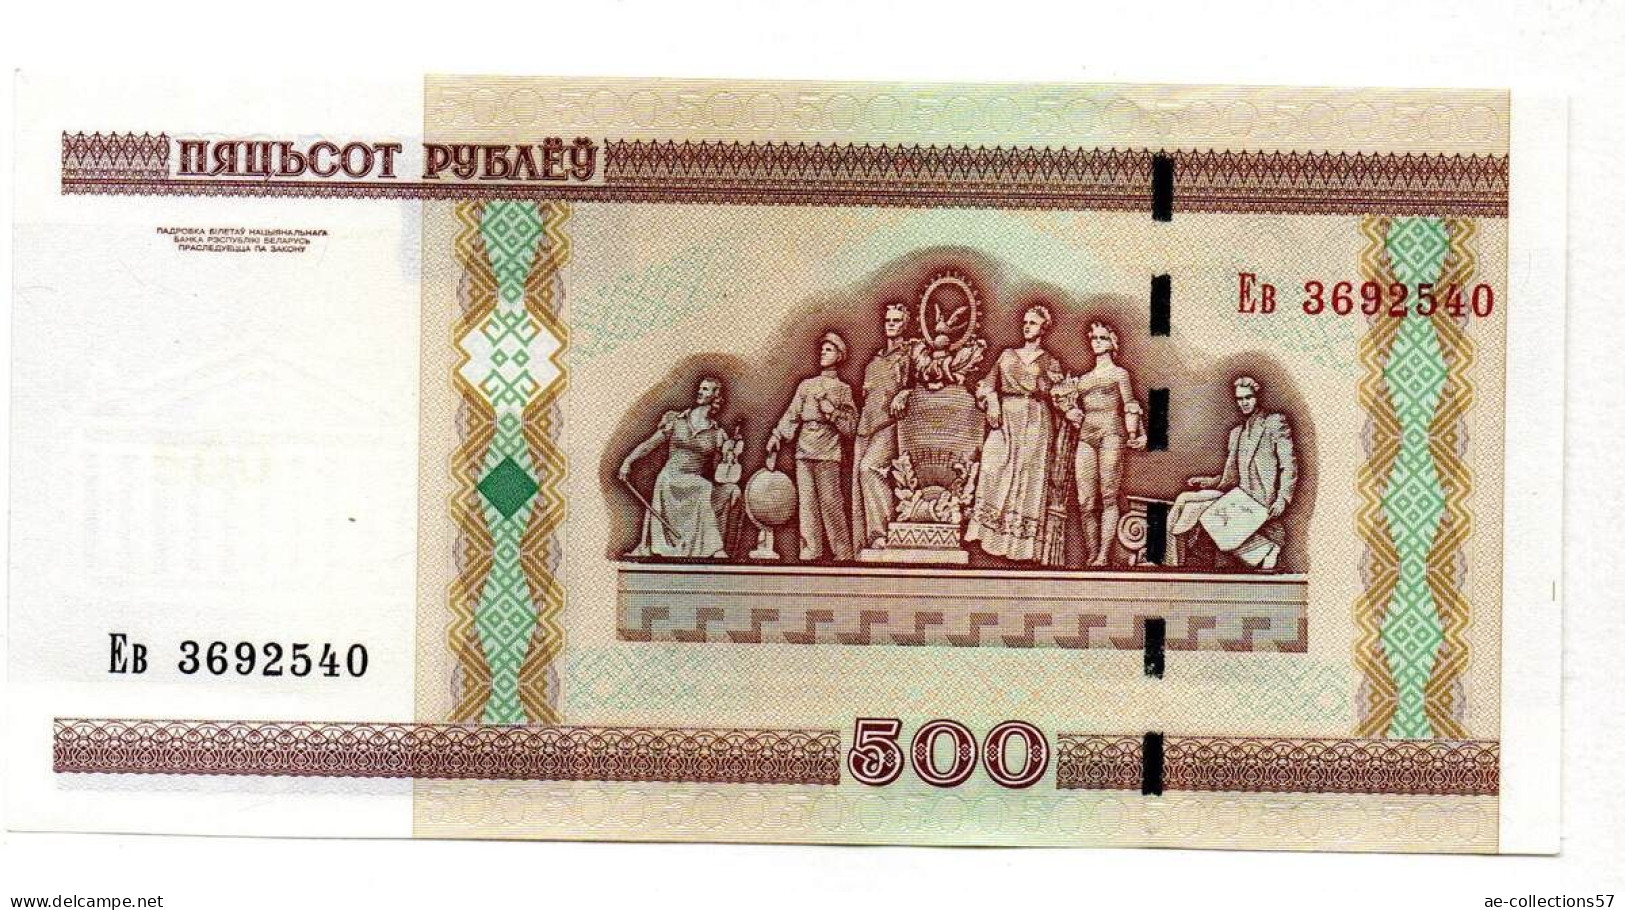 MA 19529 / Belarus 500 Rublei 2000 SPL - Belarus